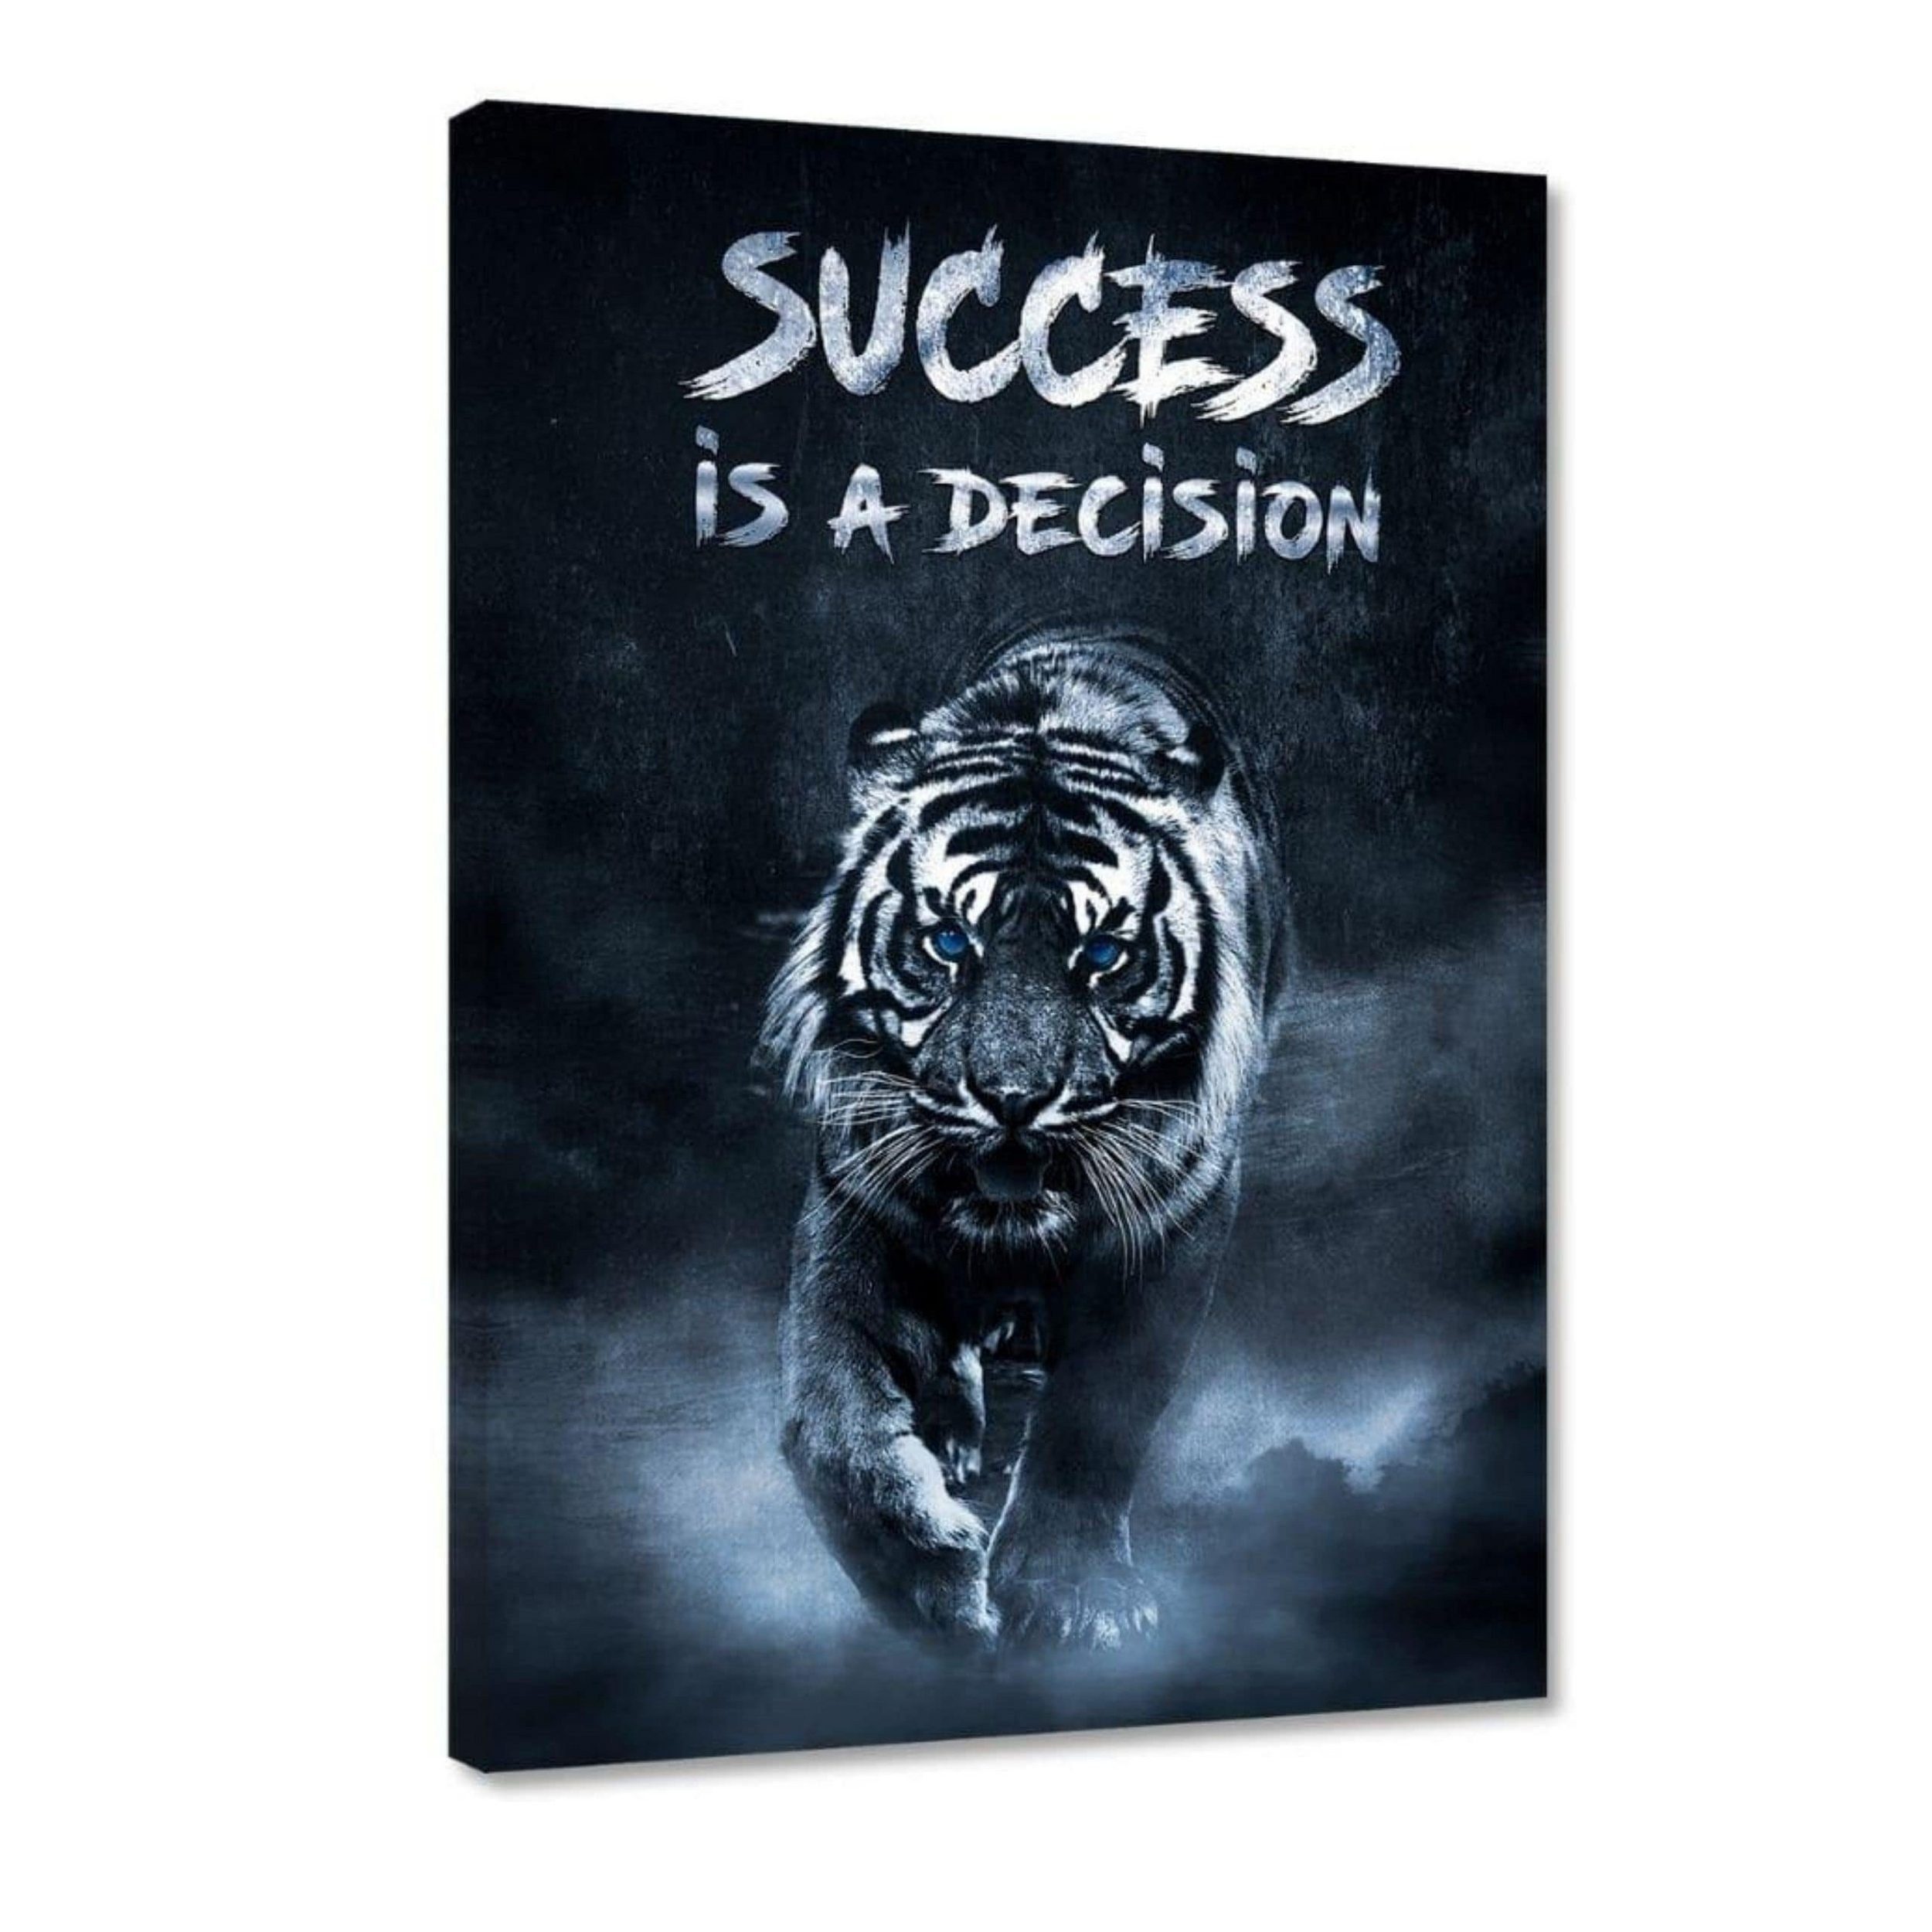 Hustling Sharks Leinwandbild Motivationsbild für Erfolg als Leinwandbild "Success is a decision", in 7 unterschiedlichen Größen verfügbar